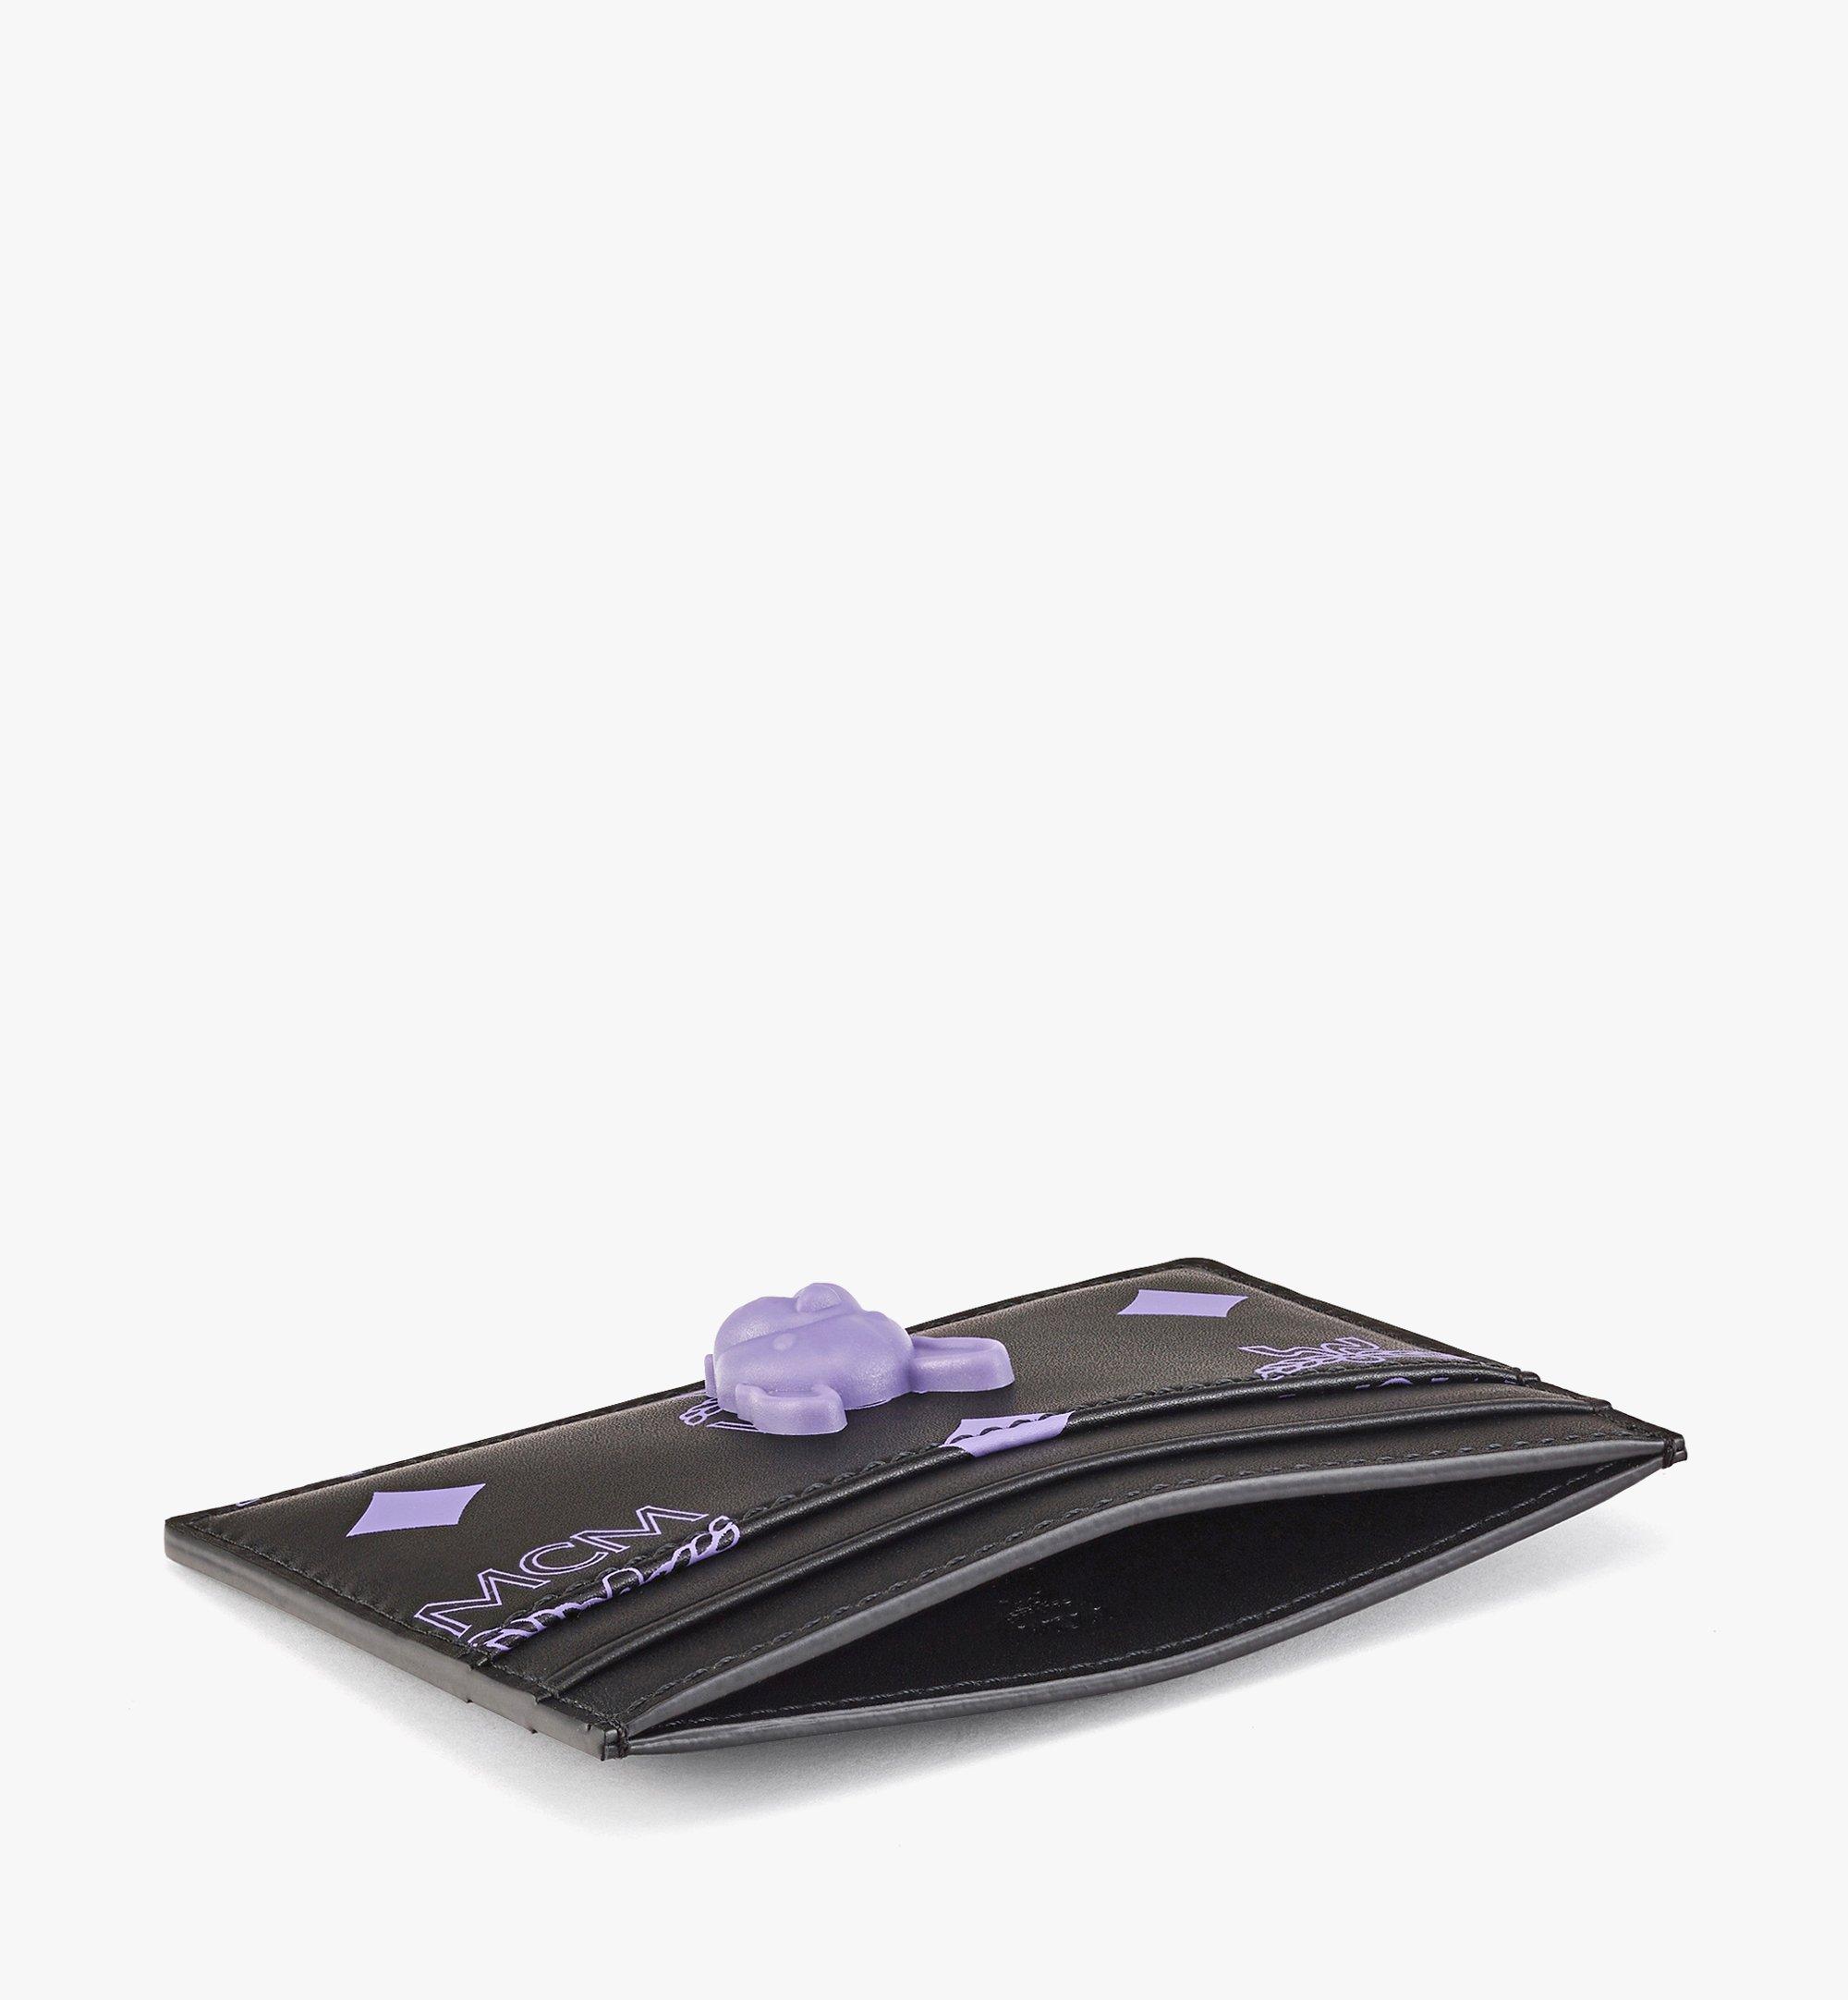 MCM 〈M Pup〉カードケース - カラースプラッシュロゴレザー Purple MXACSSX02U4001 ほかの角度から見る 1